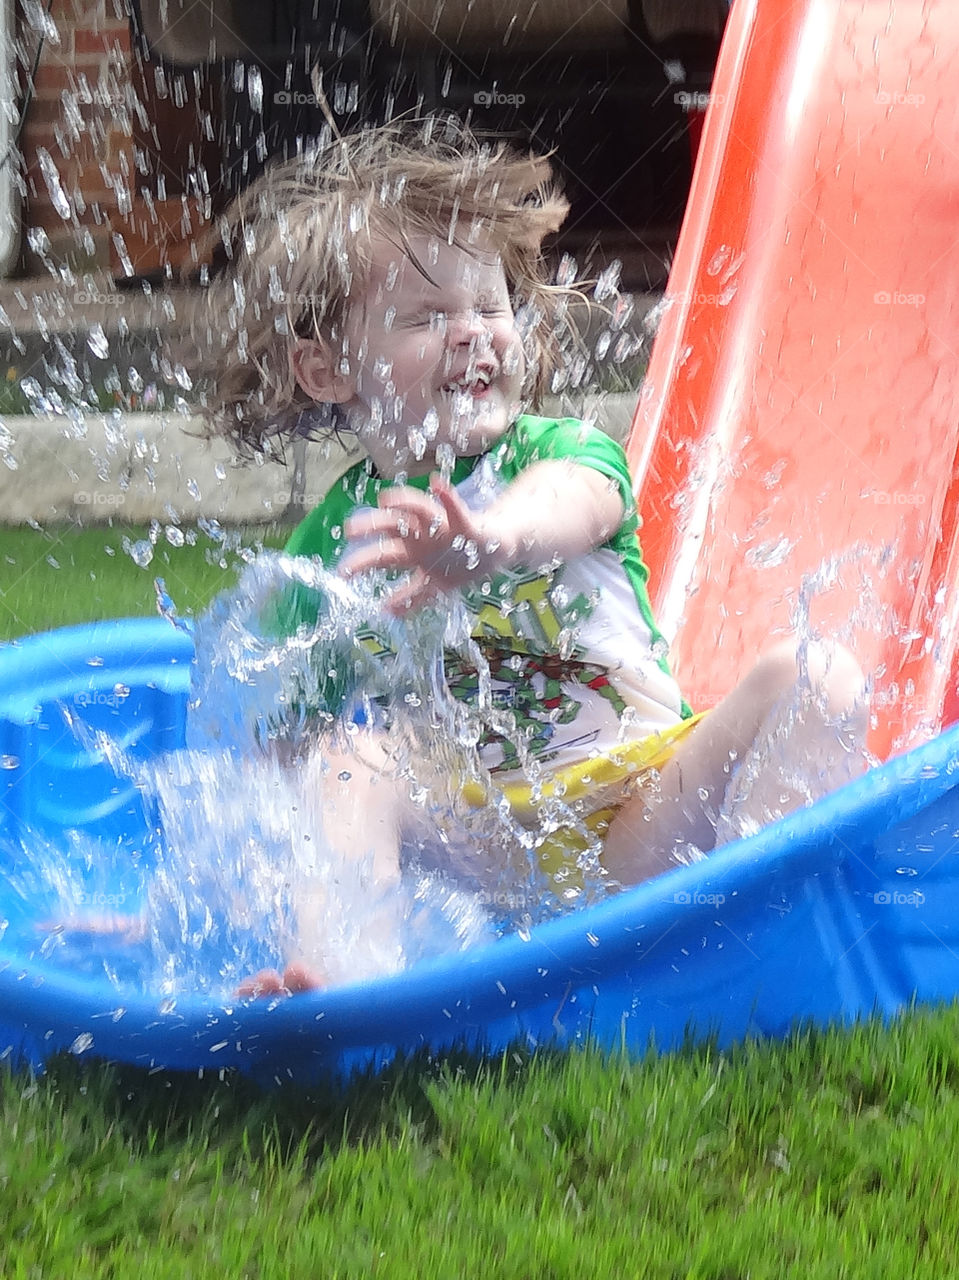 Splash. Summer fun in the backyard